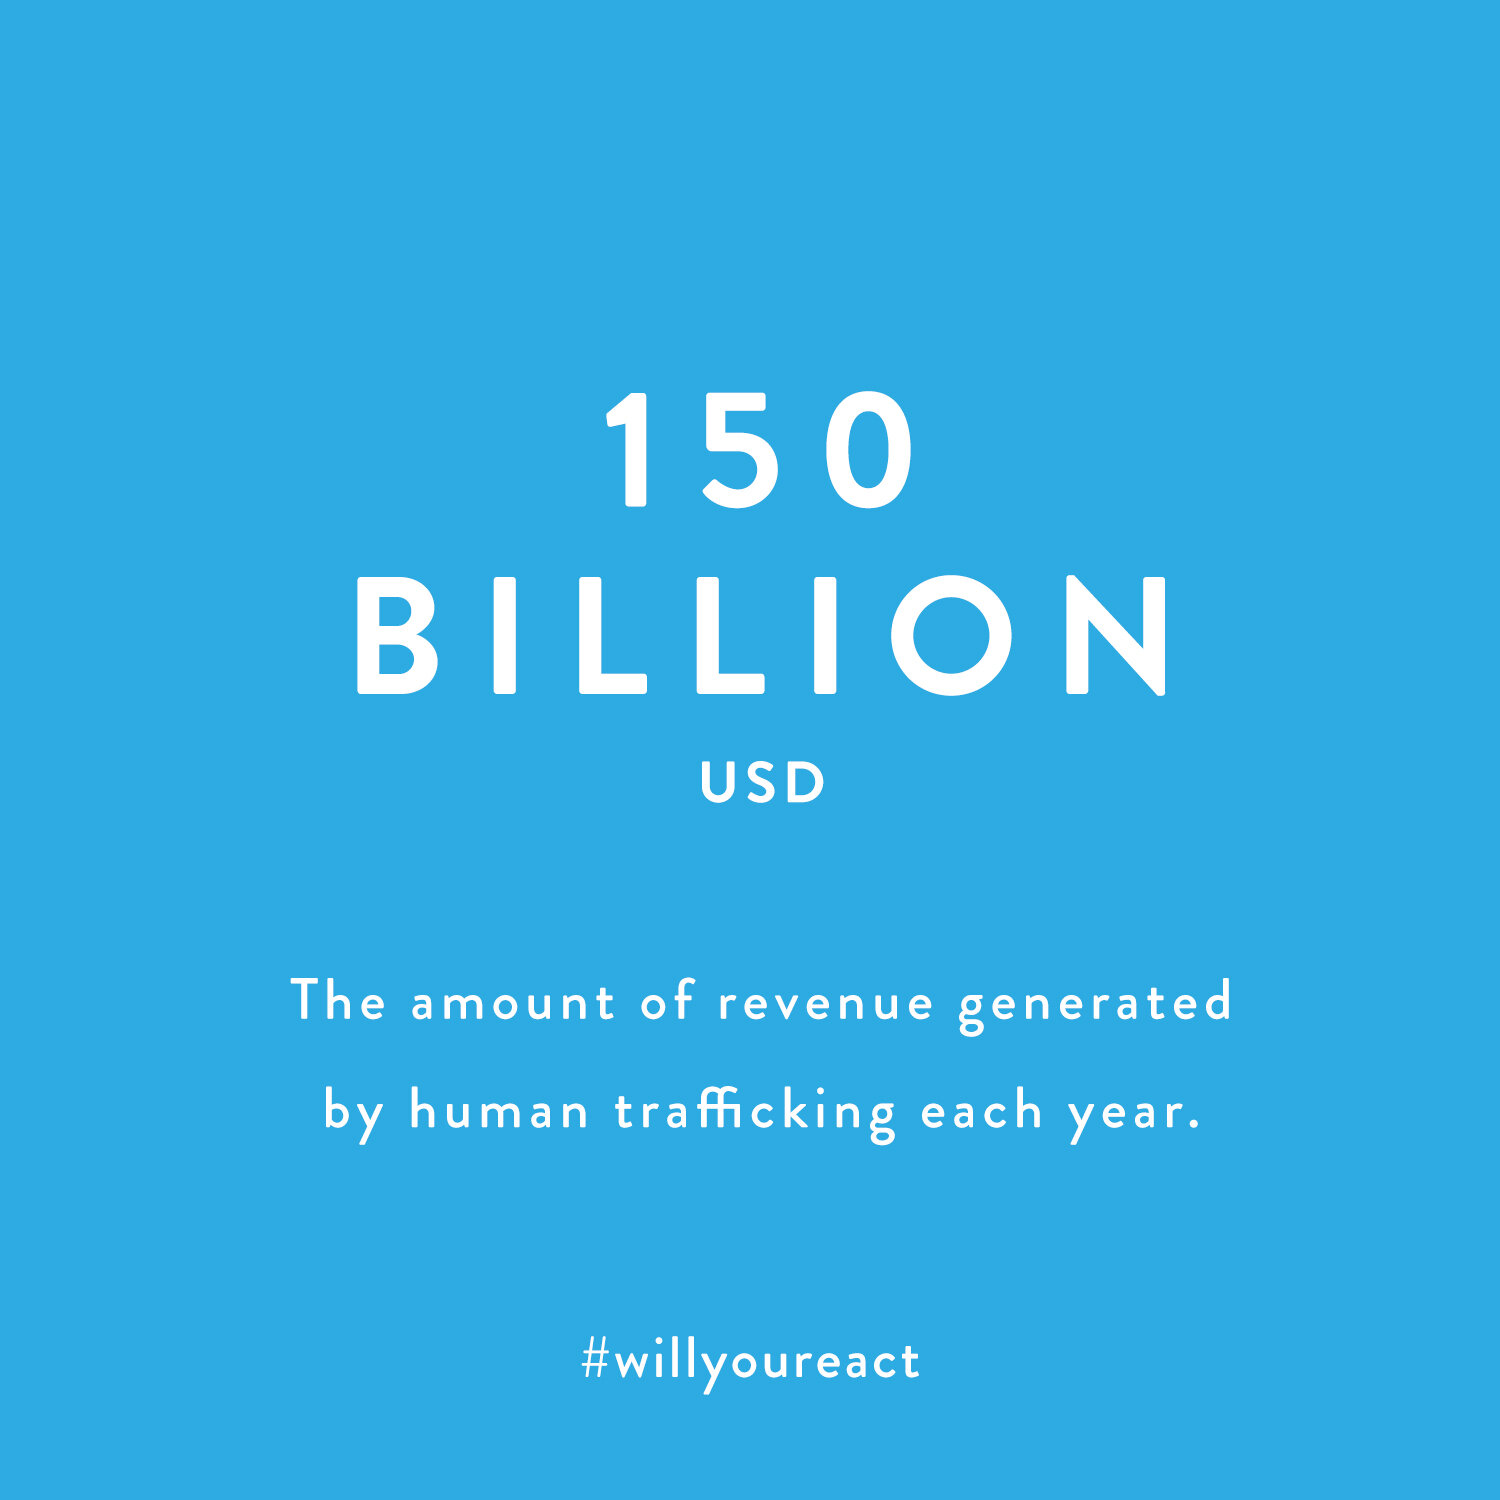 global-renewal-4-halt-human-trafficking